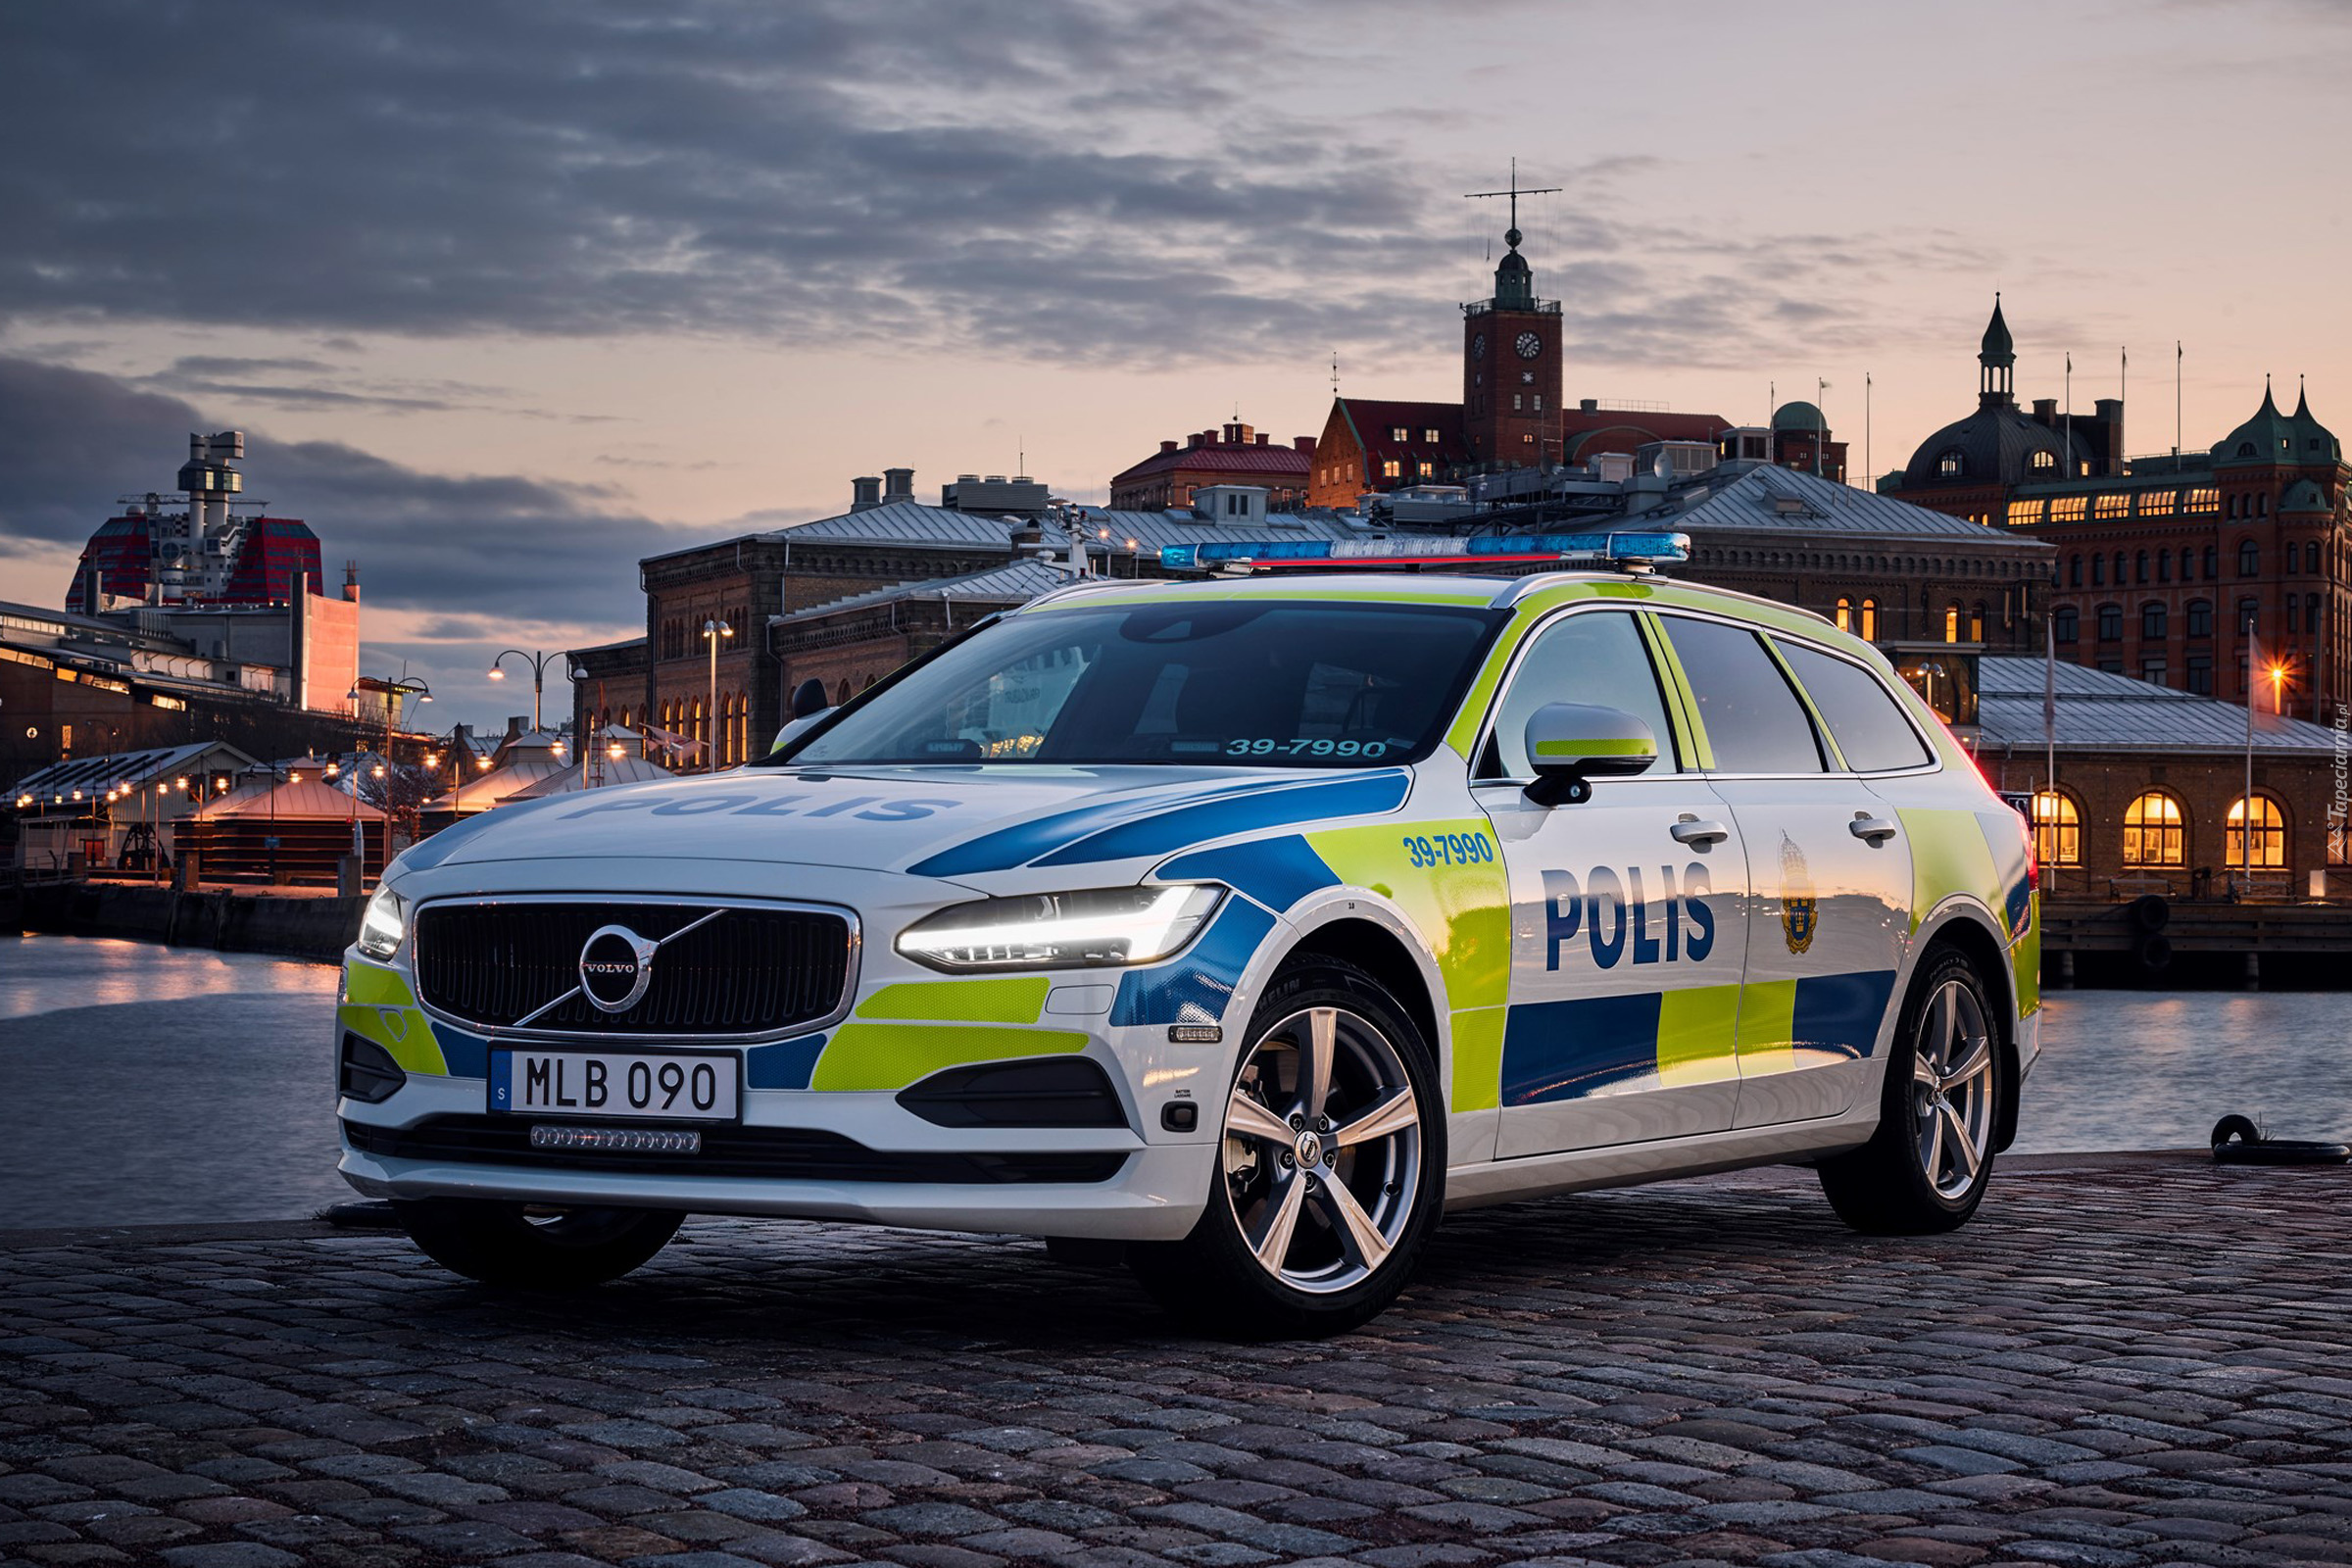 Samochód policyjny, Volvo V90, 2016